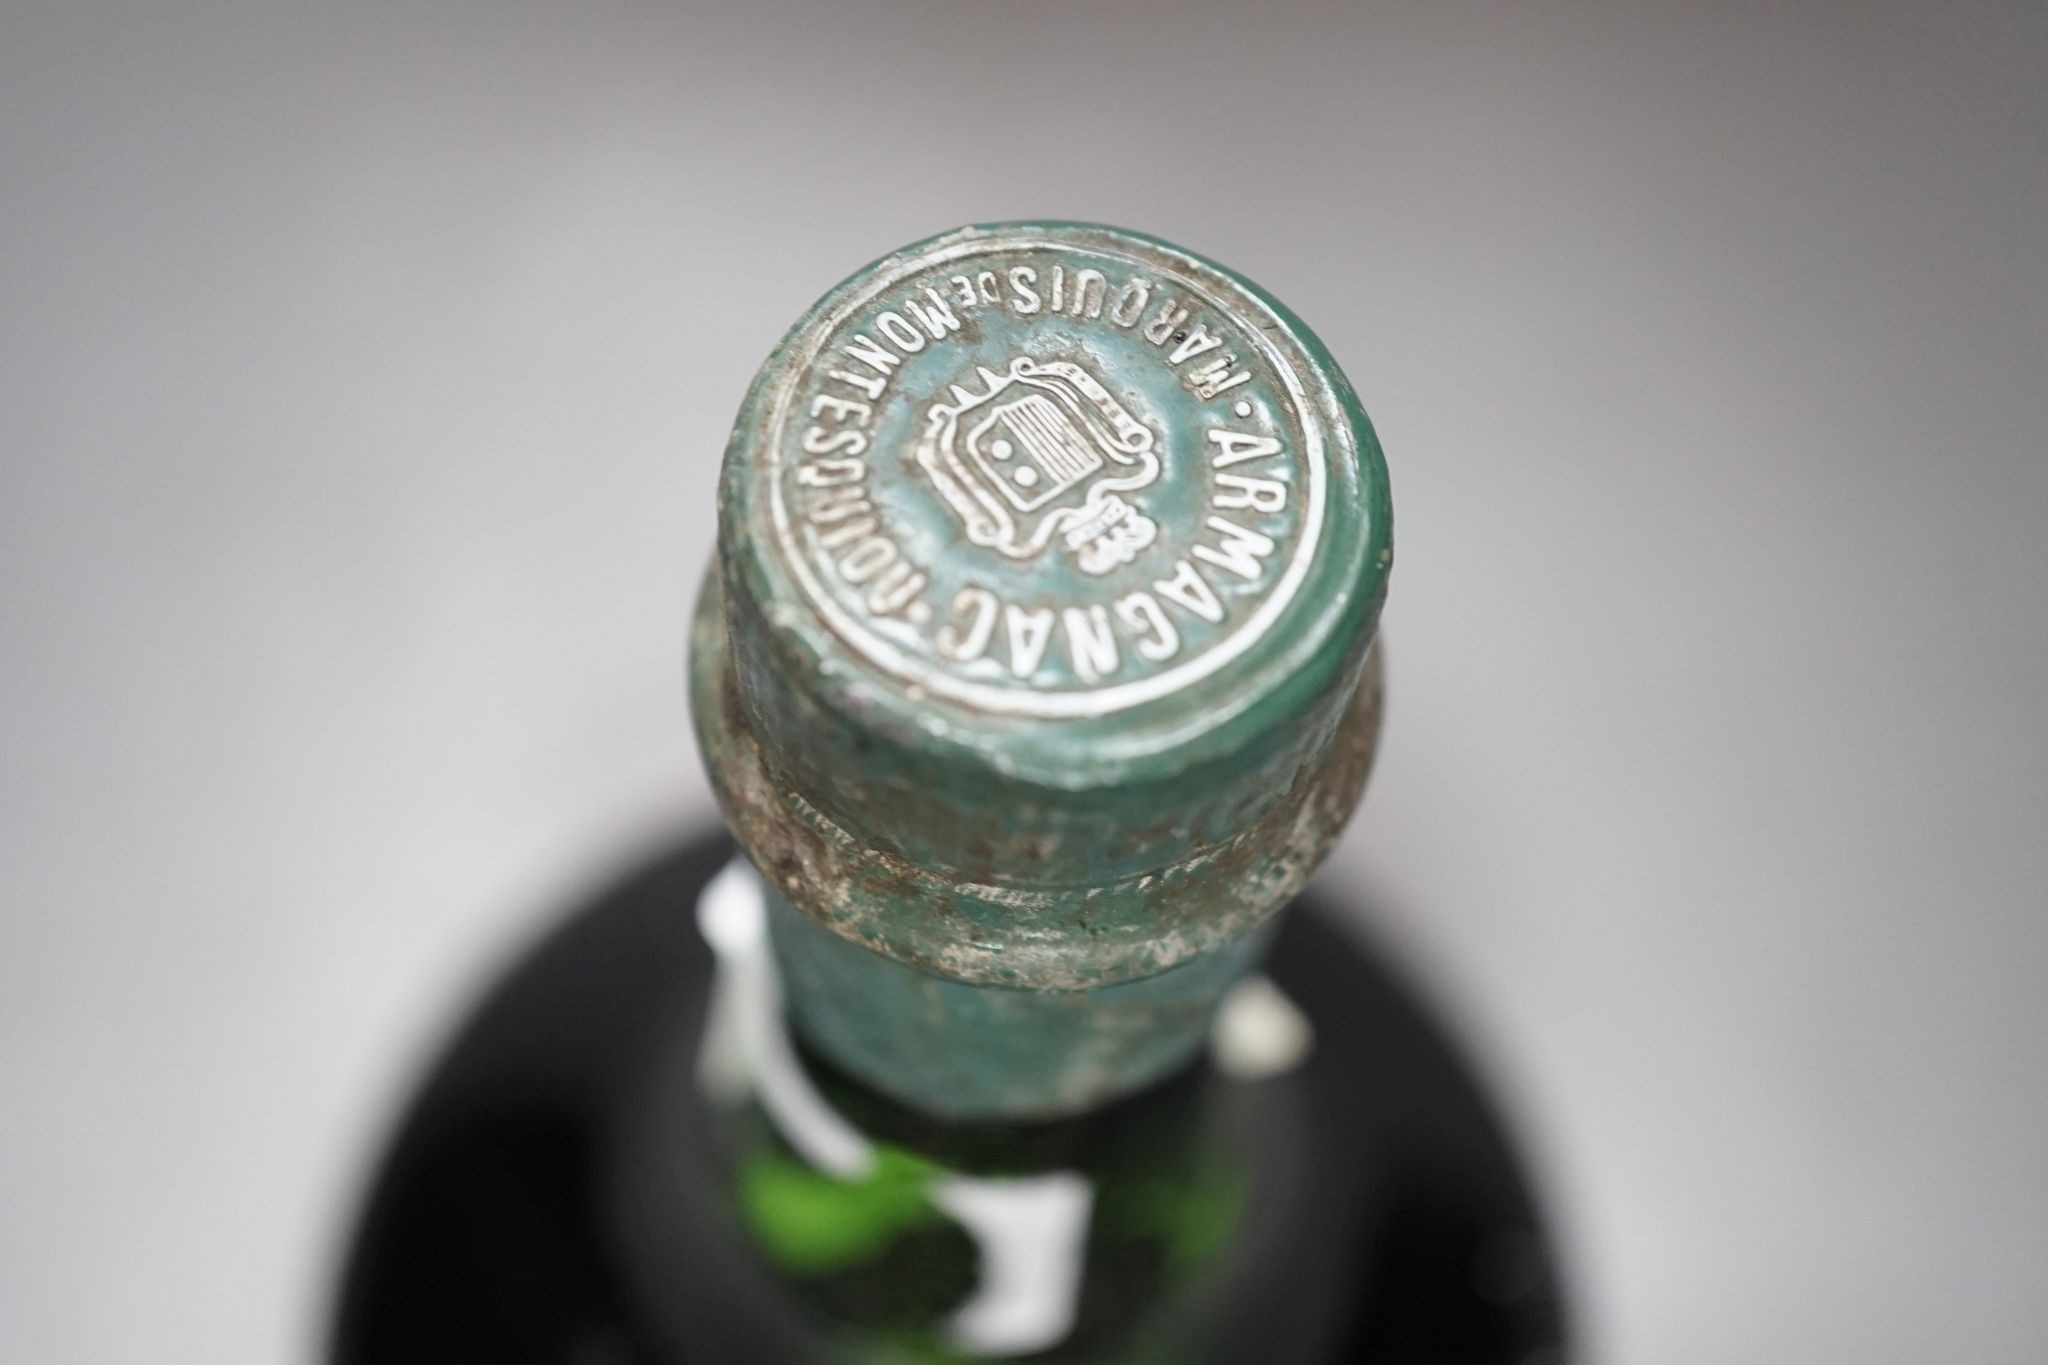 One bottle of Montesquiou Armagnac, Grande Age XO